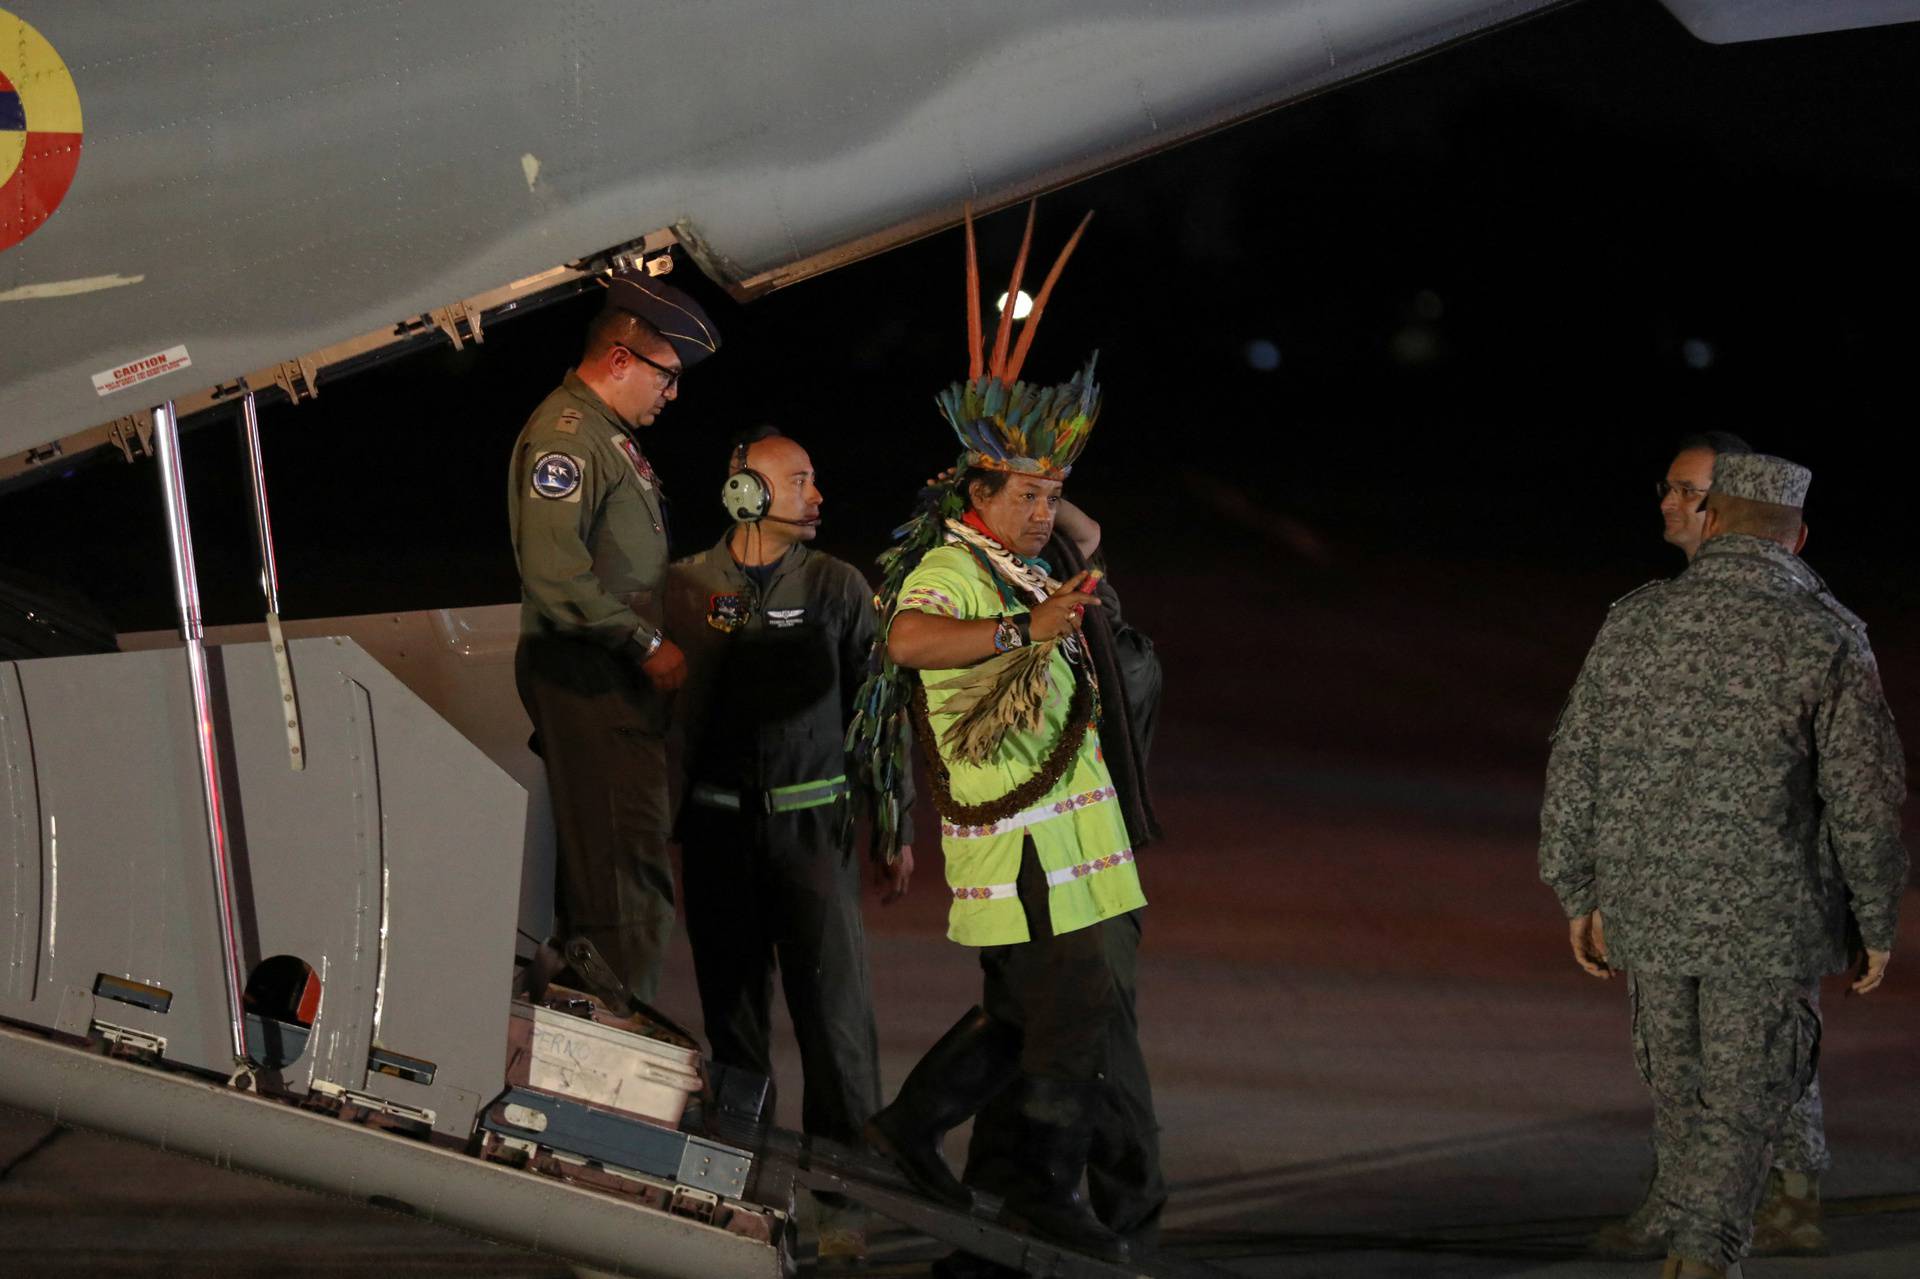 Children found alive in jungle weeks after plane crash, arrive at Bogota